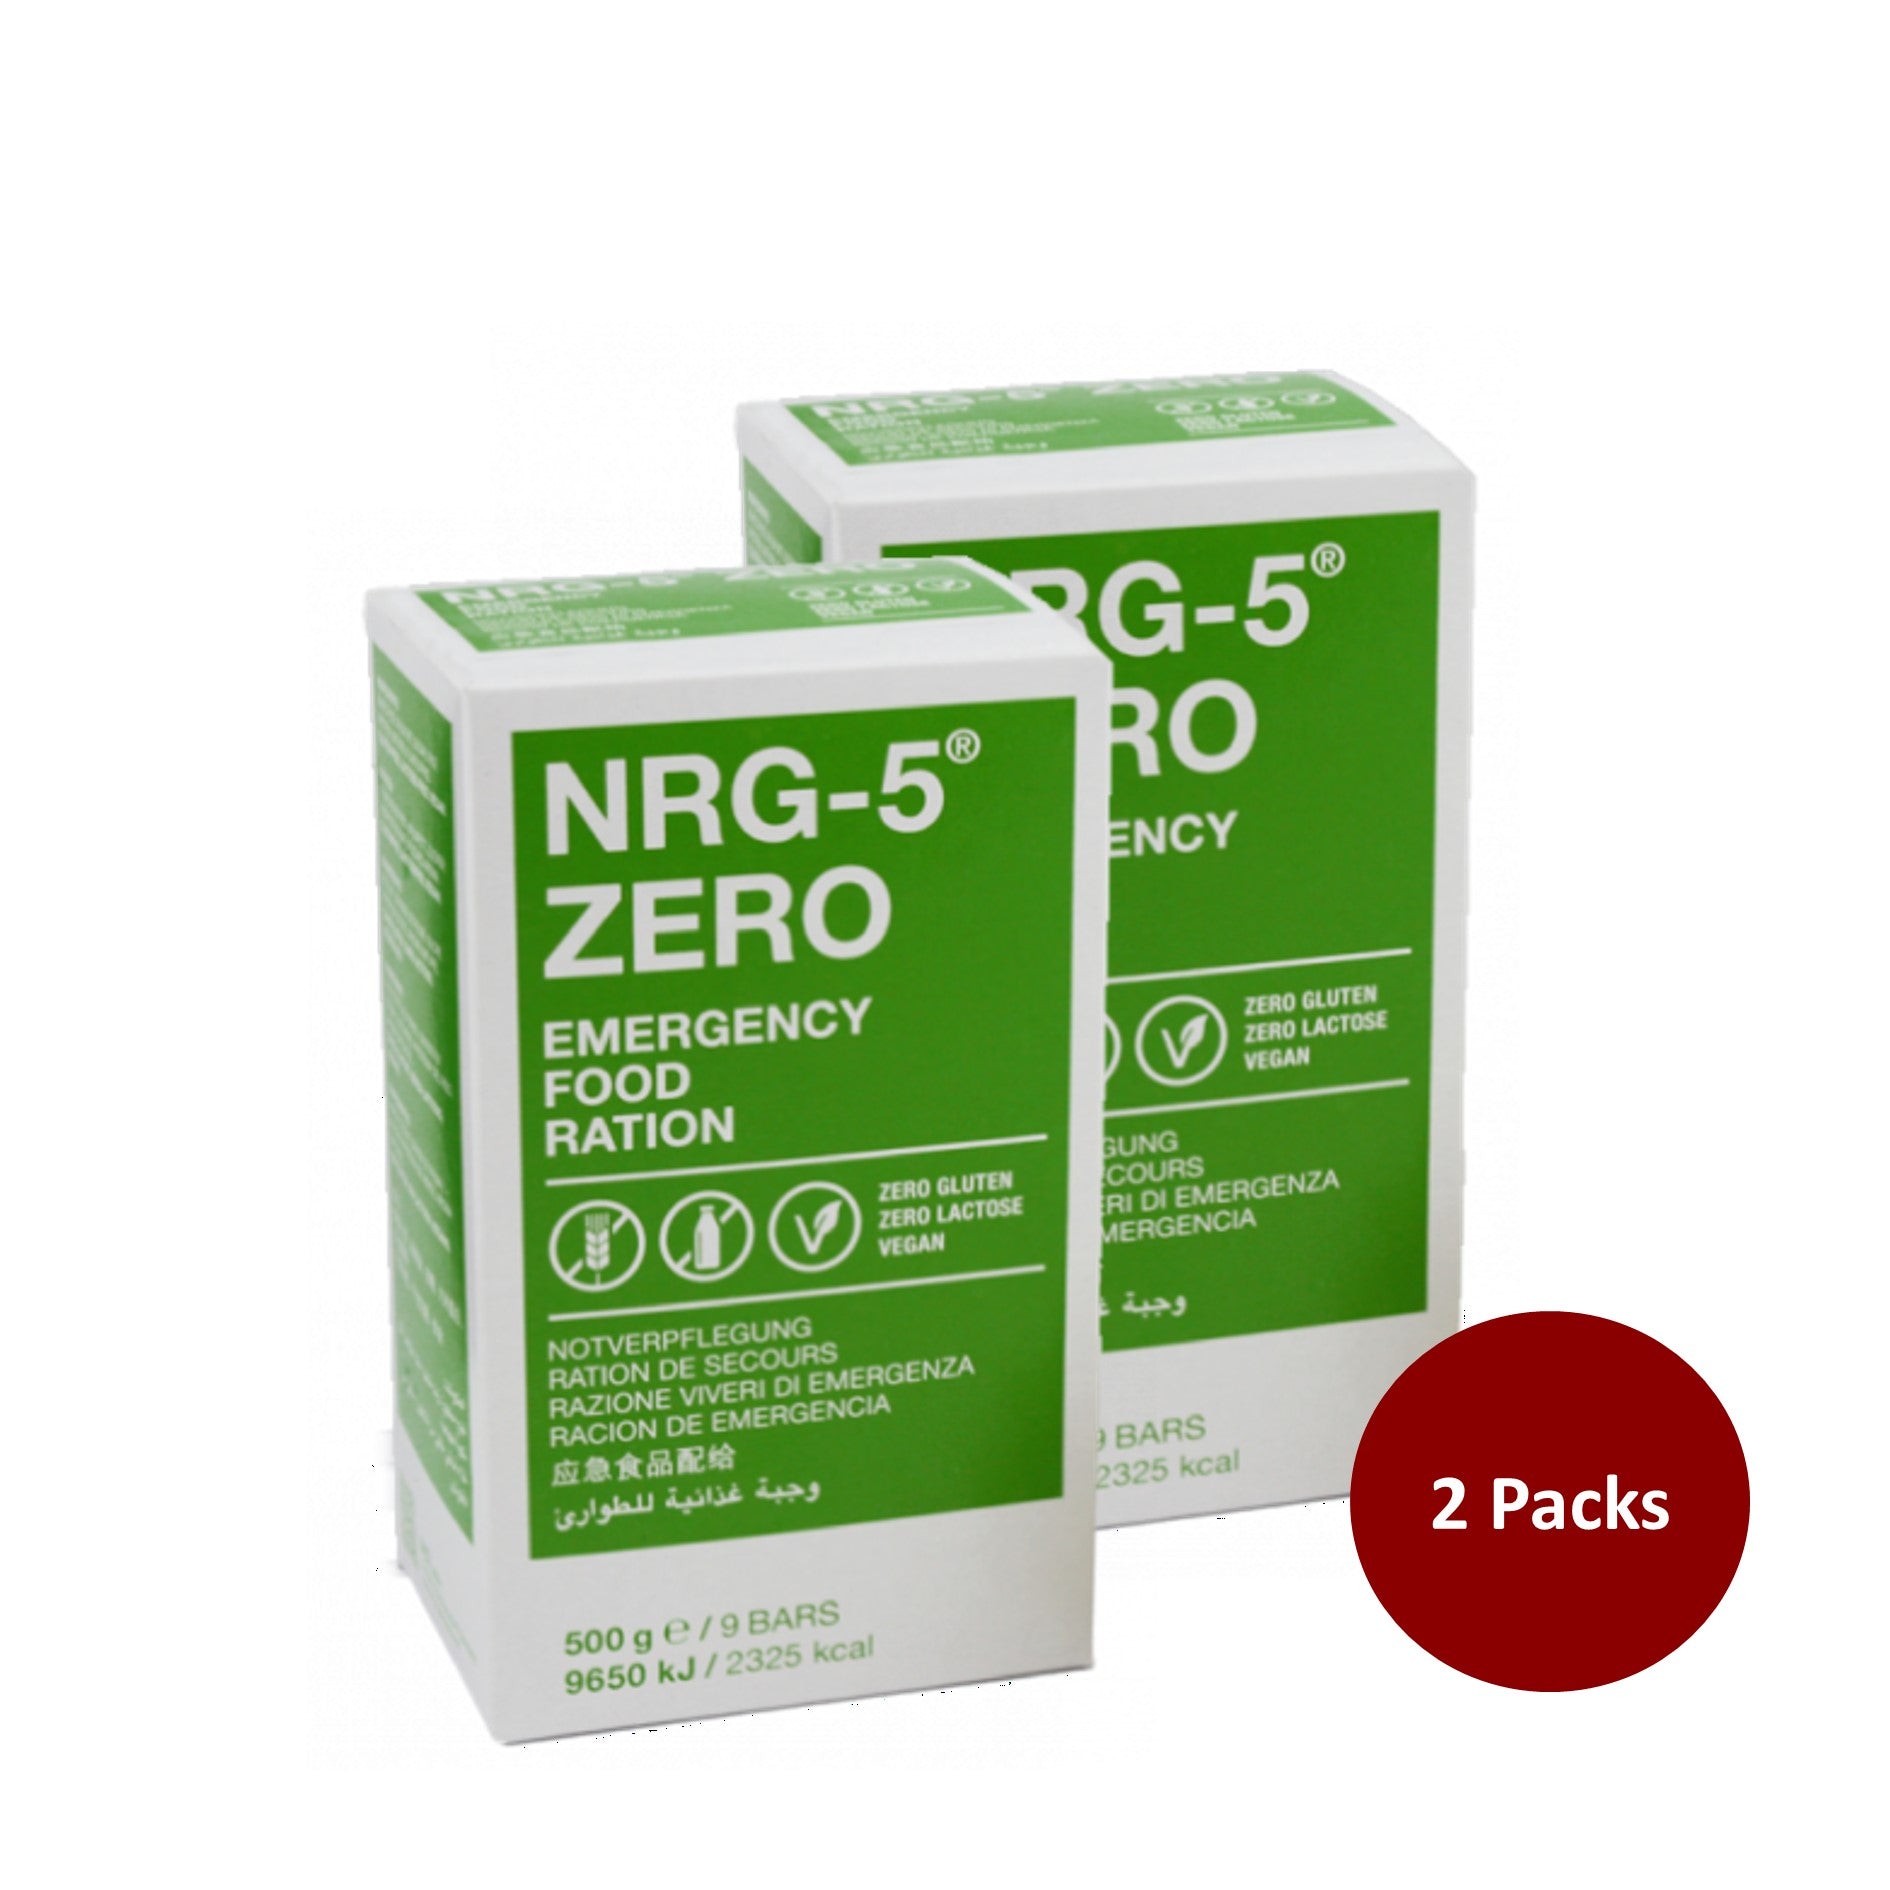 NRG-5®ZERO Emergency Food Ration - Gluten Free – Swisspro Singapore